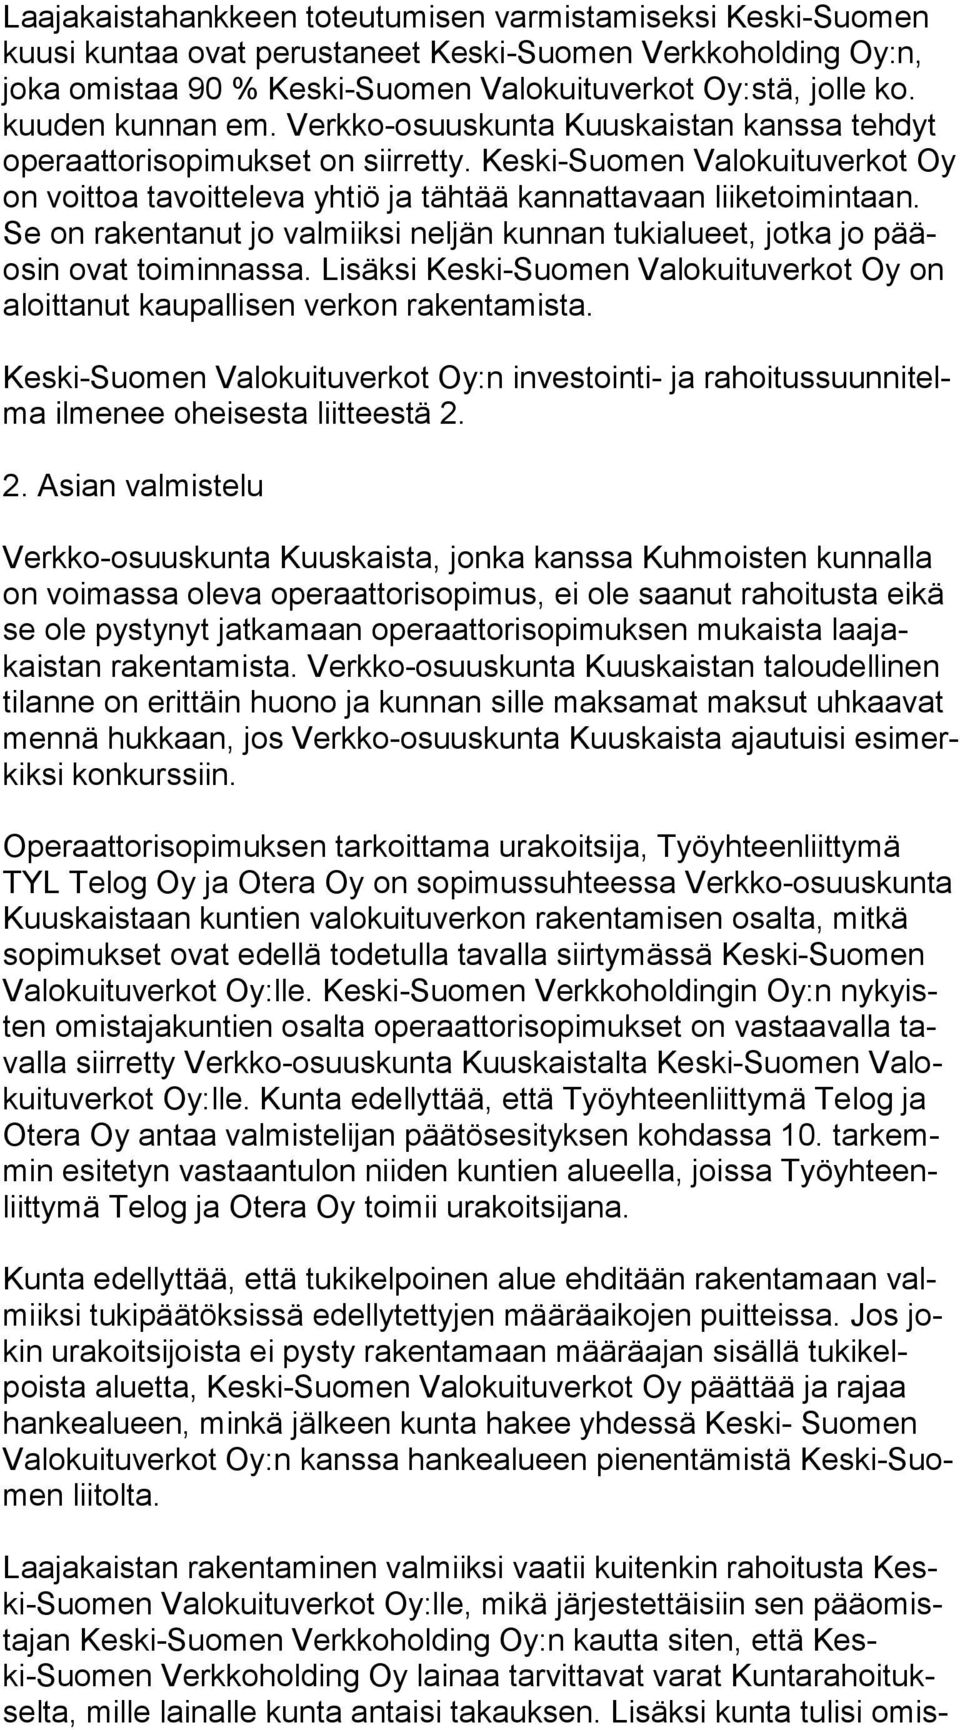 Keski-Suomen Valokuituverkot Oy on voittoa tavoitteleva yhtiö ja tähtää kannattavaan lii ke toi min taan. Se on rakentanut jo valmiiksi neljän kunnan tukialueet, jotka jo pääosin ovat toiminnassa.